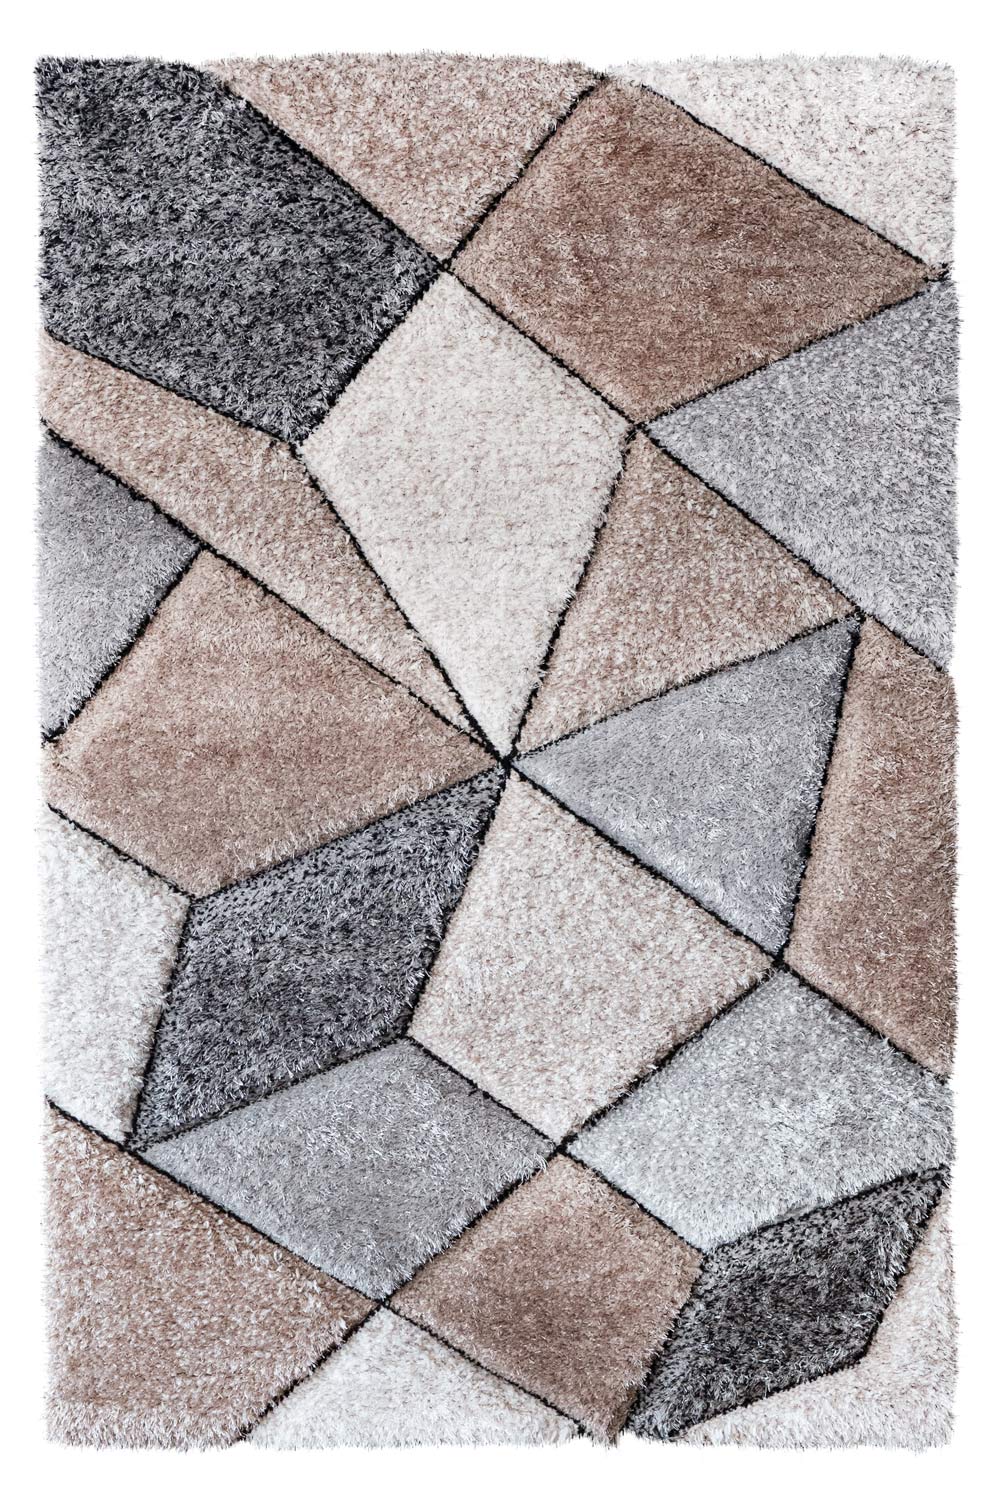 Kusový koberec CALIFORNIA P646 vizon/grey 200x290 cm